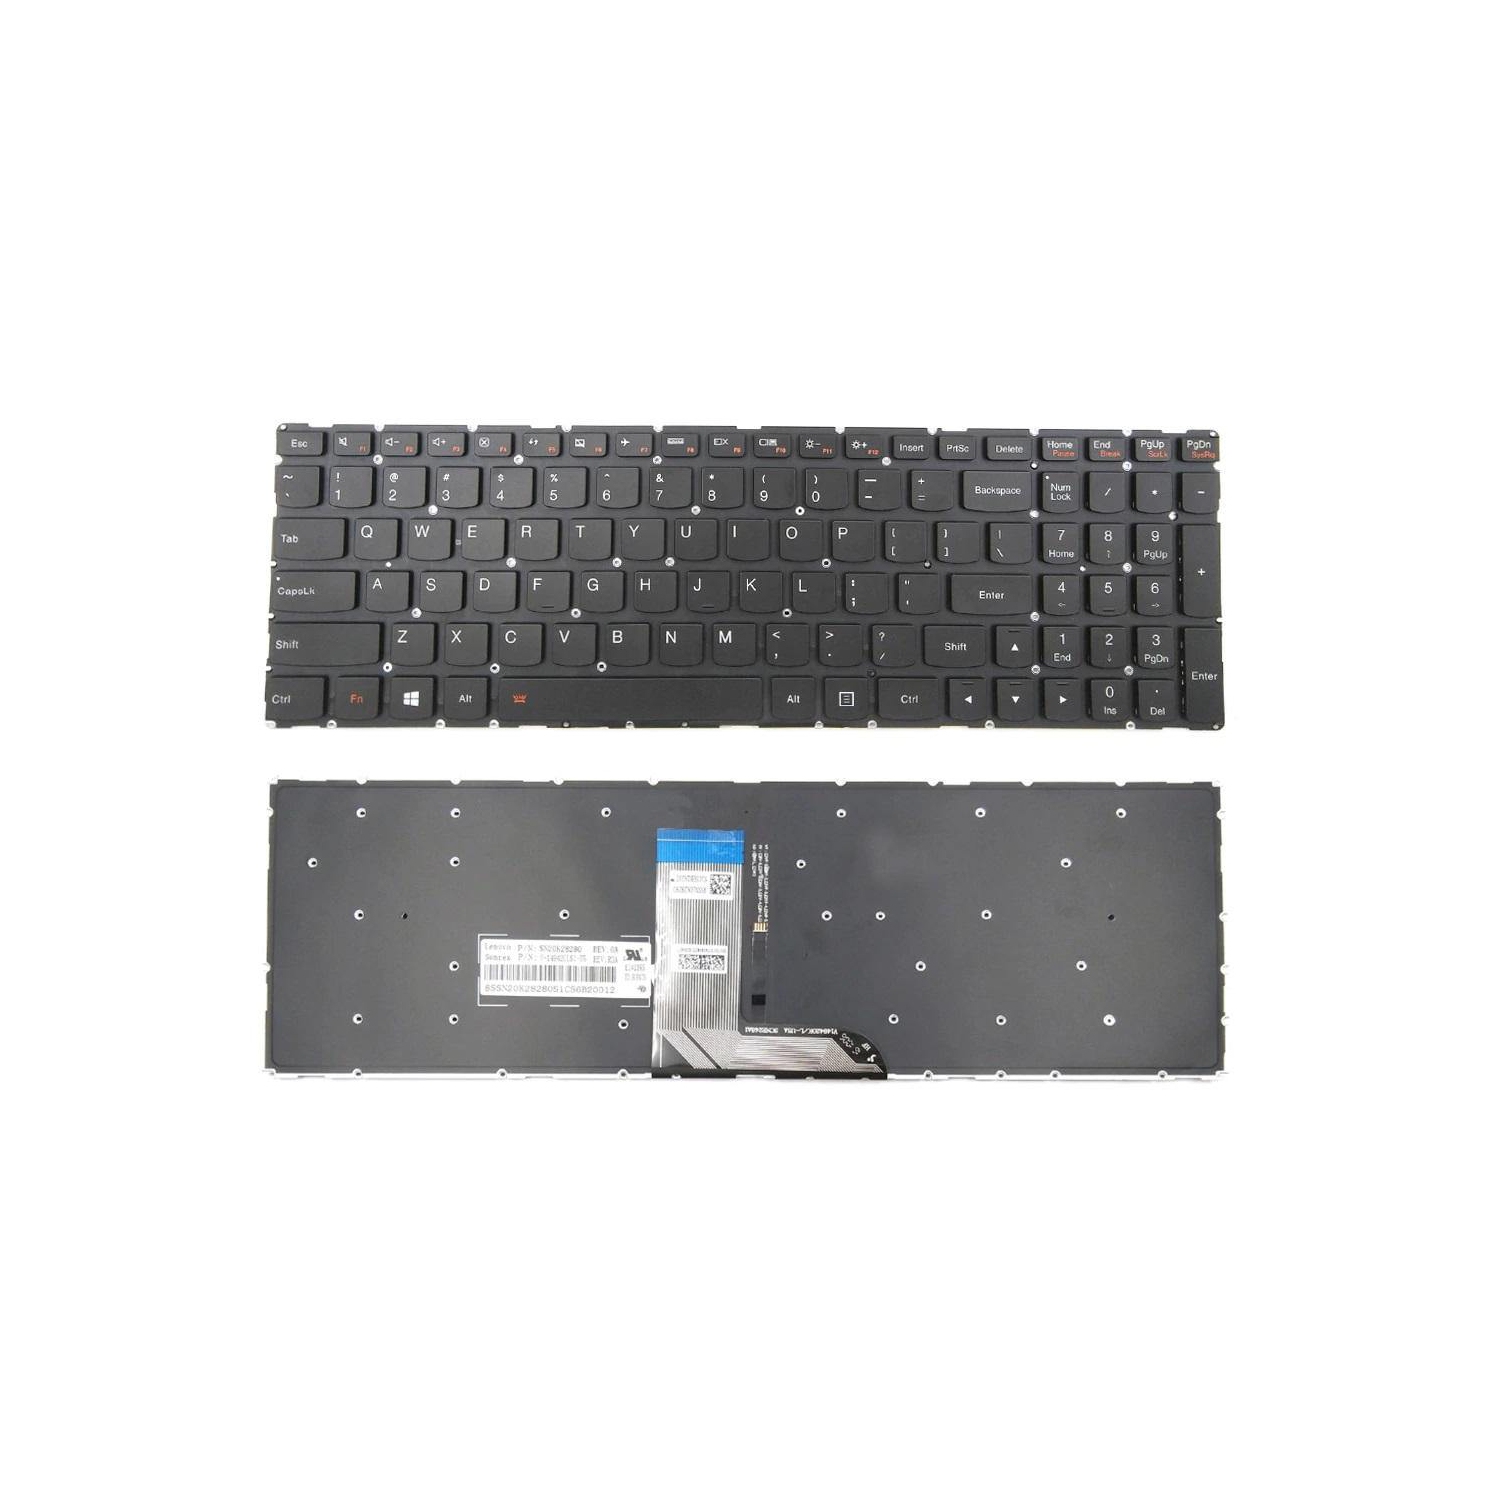 New Lenovo IdeaPad 700-17ISK 700-15ISK 700-15 700-17 US English Backlit Keyboard SN20K28280 V-149420LS1-US